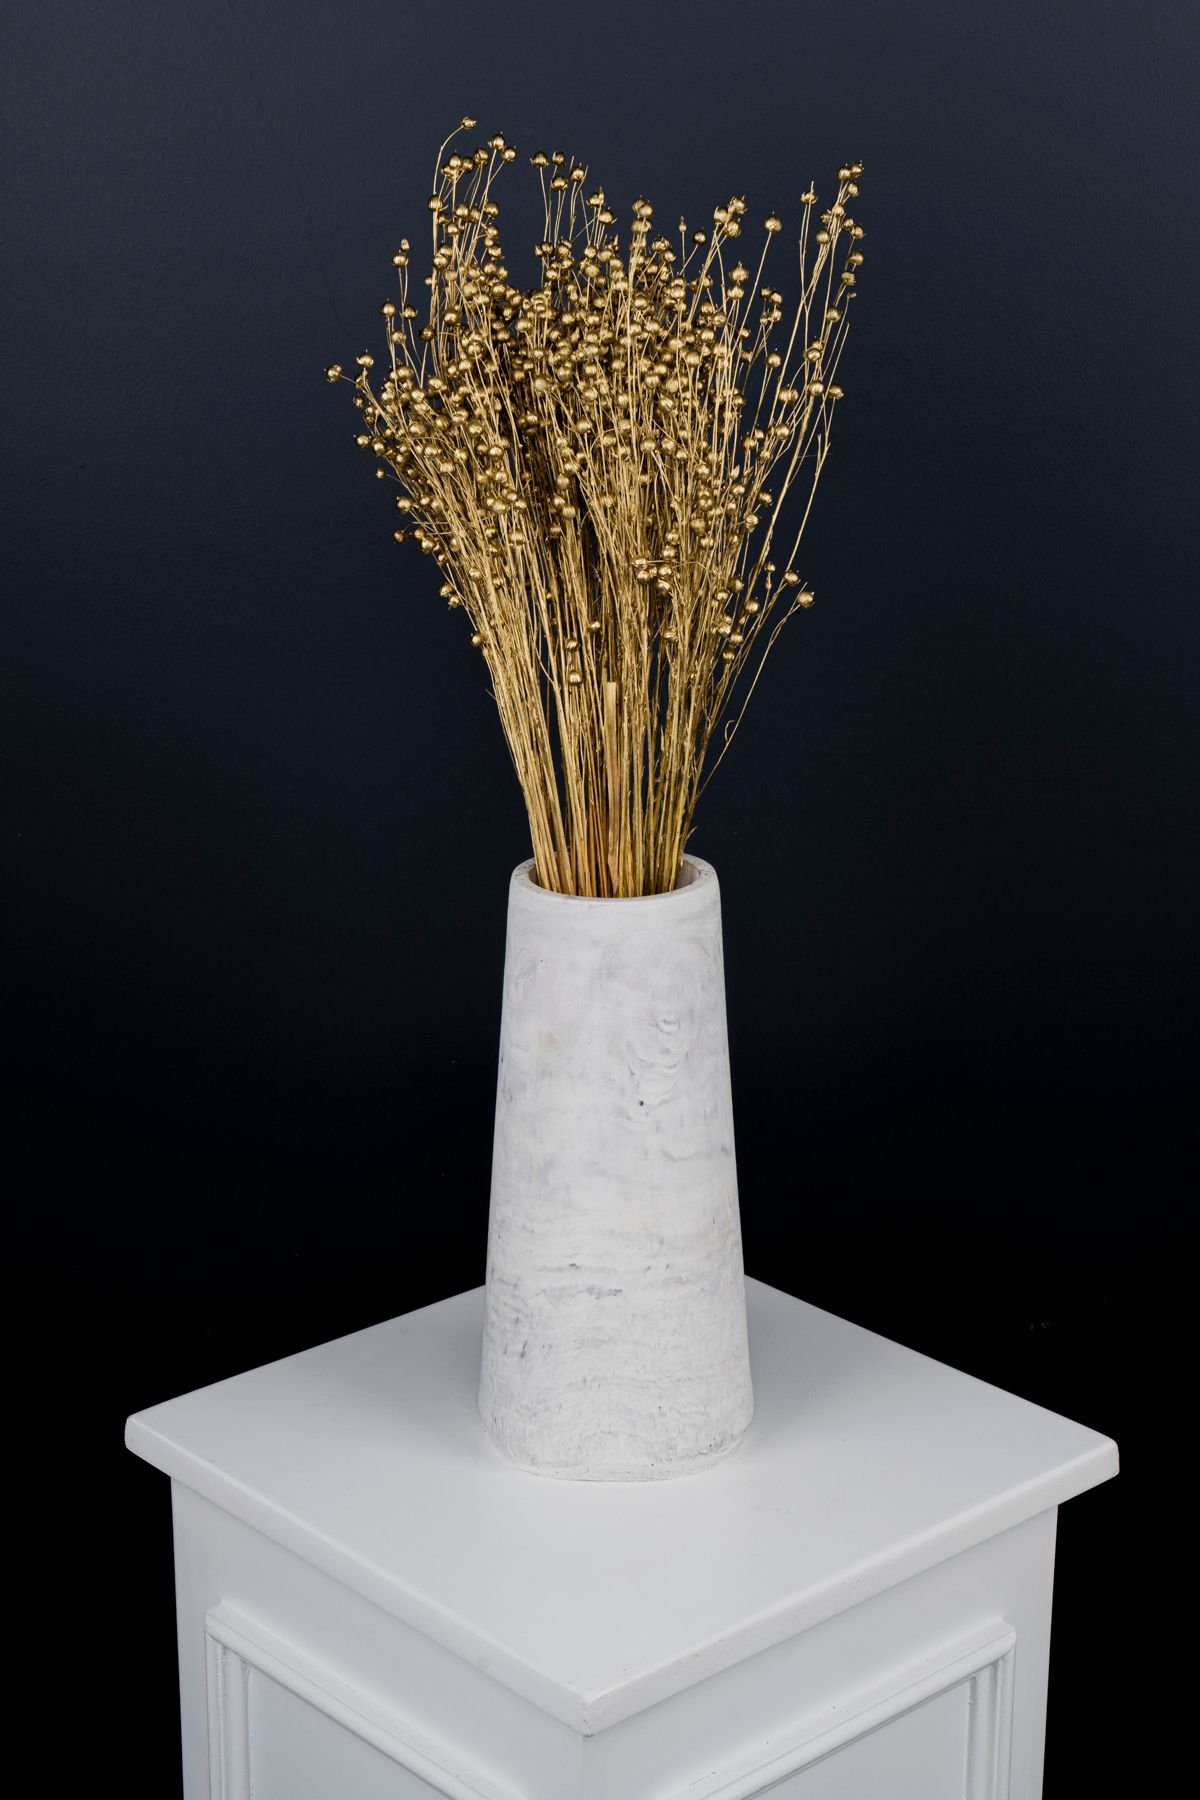 Kuru Çiçek Deposu Yılbaşı Yeni Yıl Hediyesi Keten Gold 50 cm - Kuru Çiçek